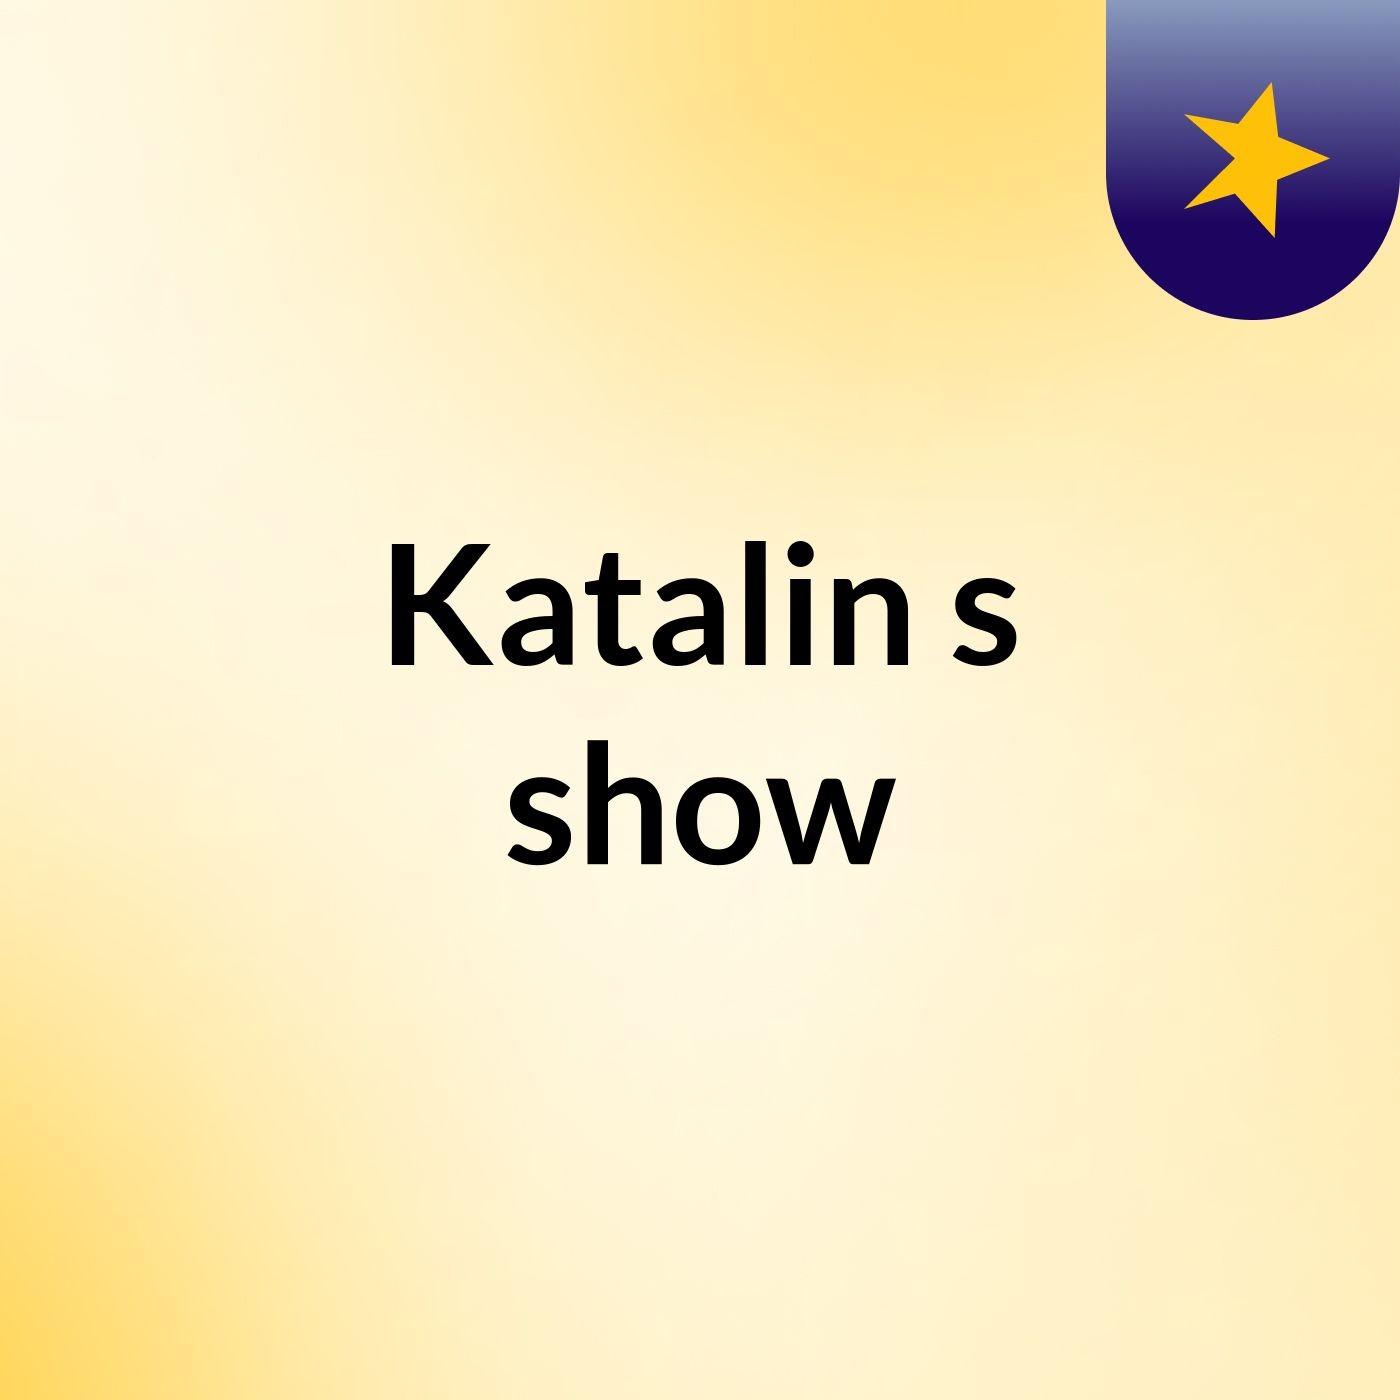 Katalin's show